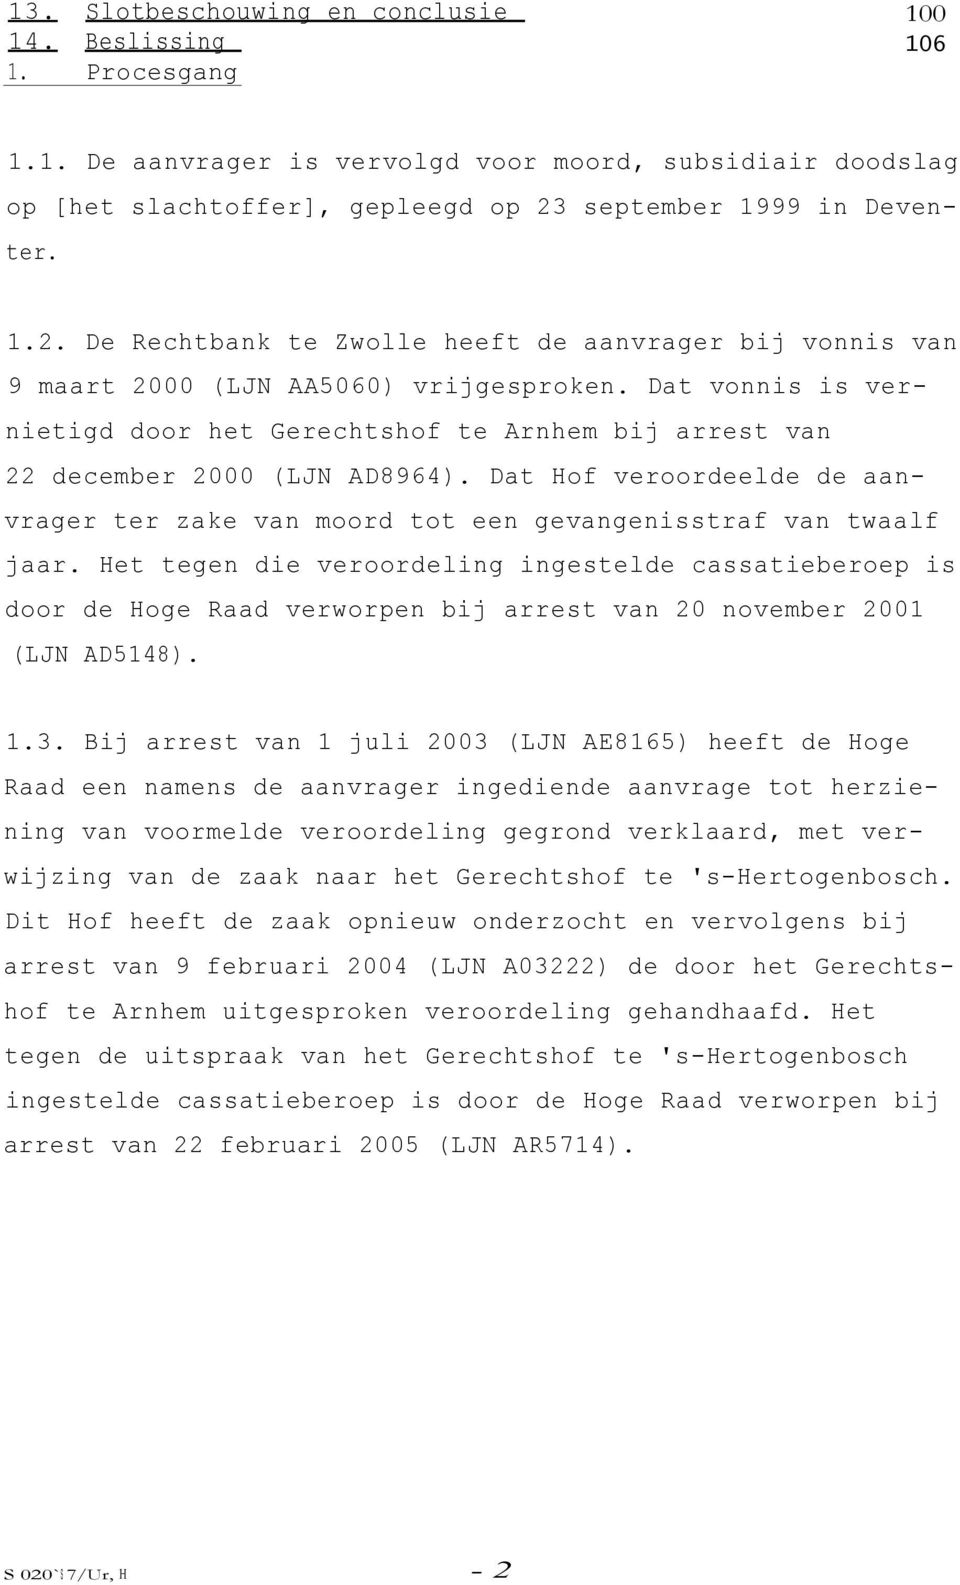 Dat vonnis is vernietigd door het Gerechtshof te Arnhem bij arrest van 22 december 2000 (LJN AD8964). Dat Hof veroordeelde de aanvrager ter zake van moord tot een gevangenisstraf van twaalf jaar.